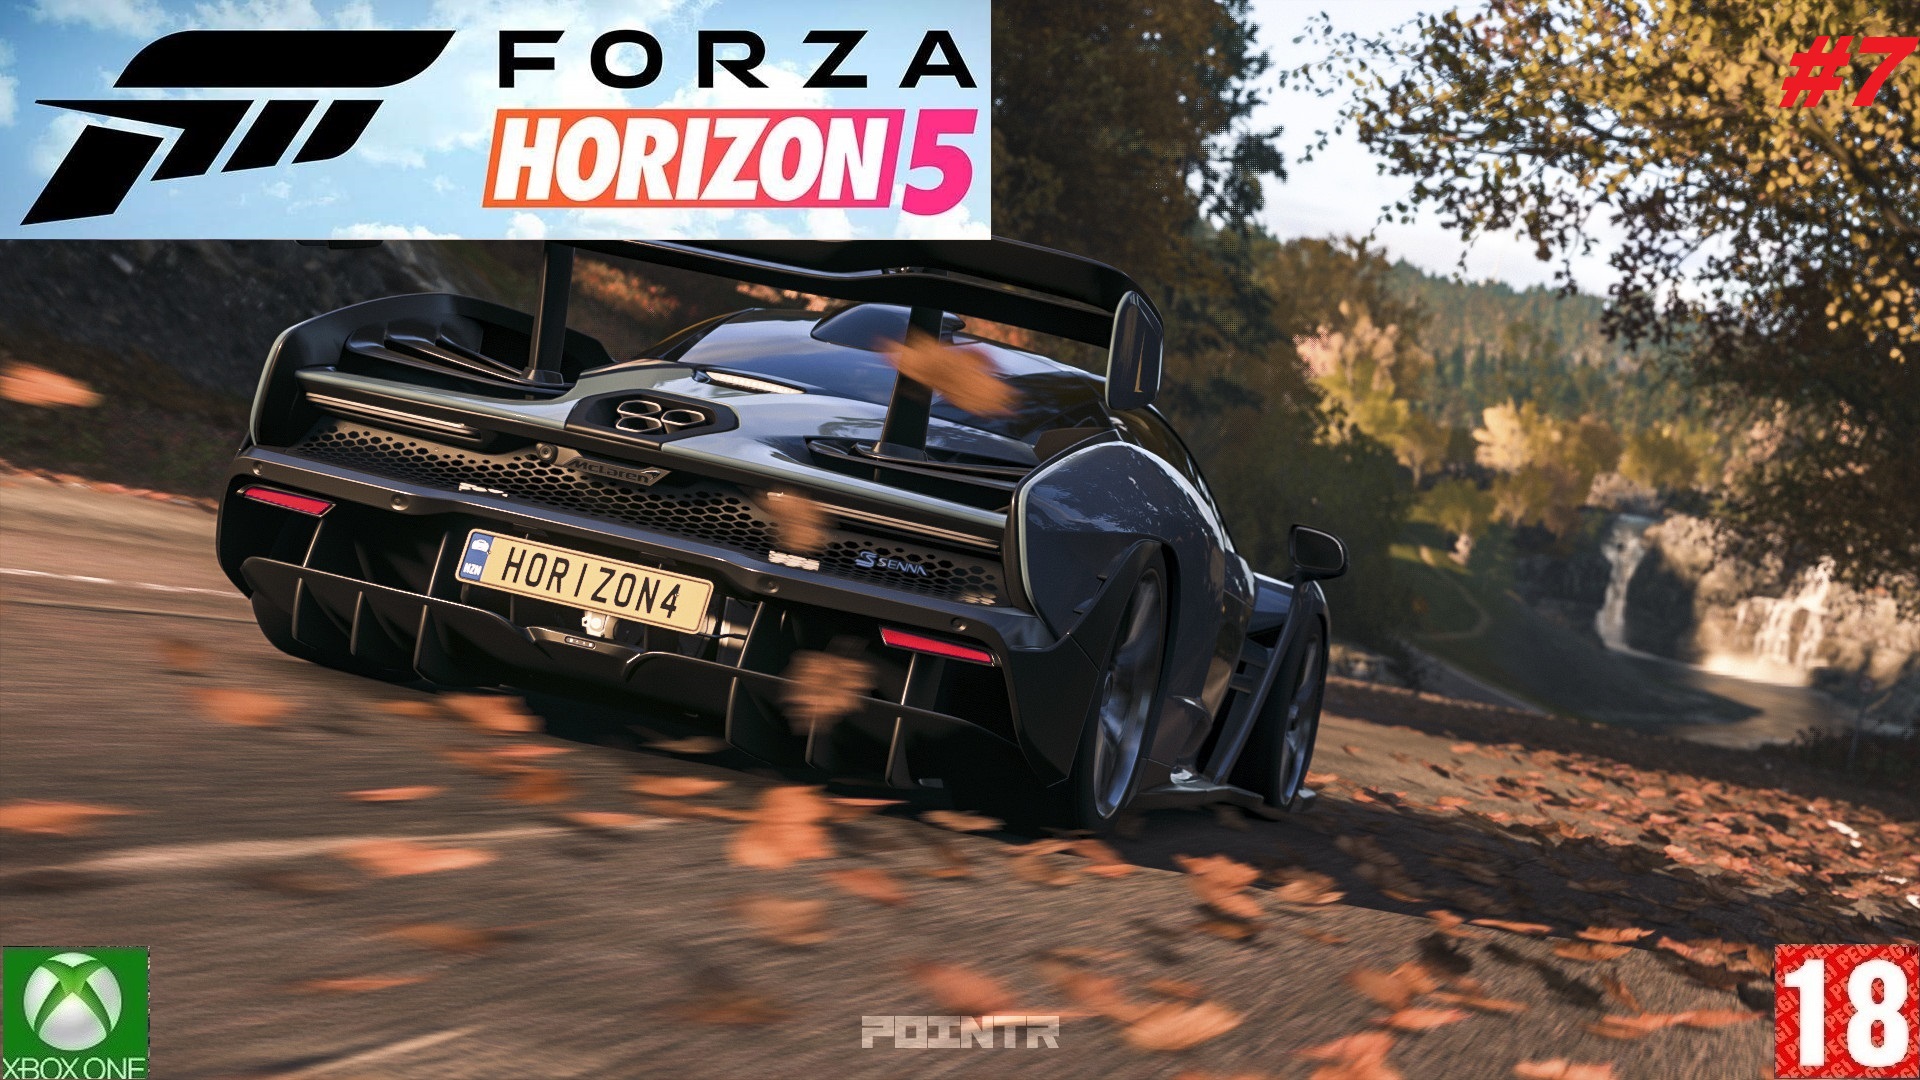 Forza Horizon 5 (Xbox One) - Прохождение - #7, Добро пожаловать в Мексику. (без комментариев)